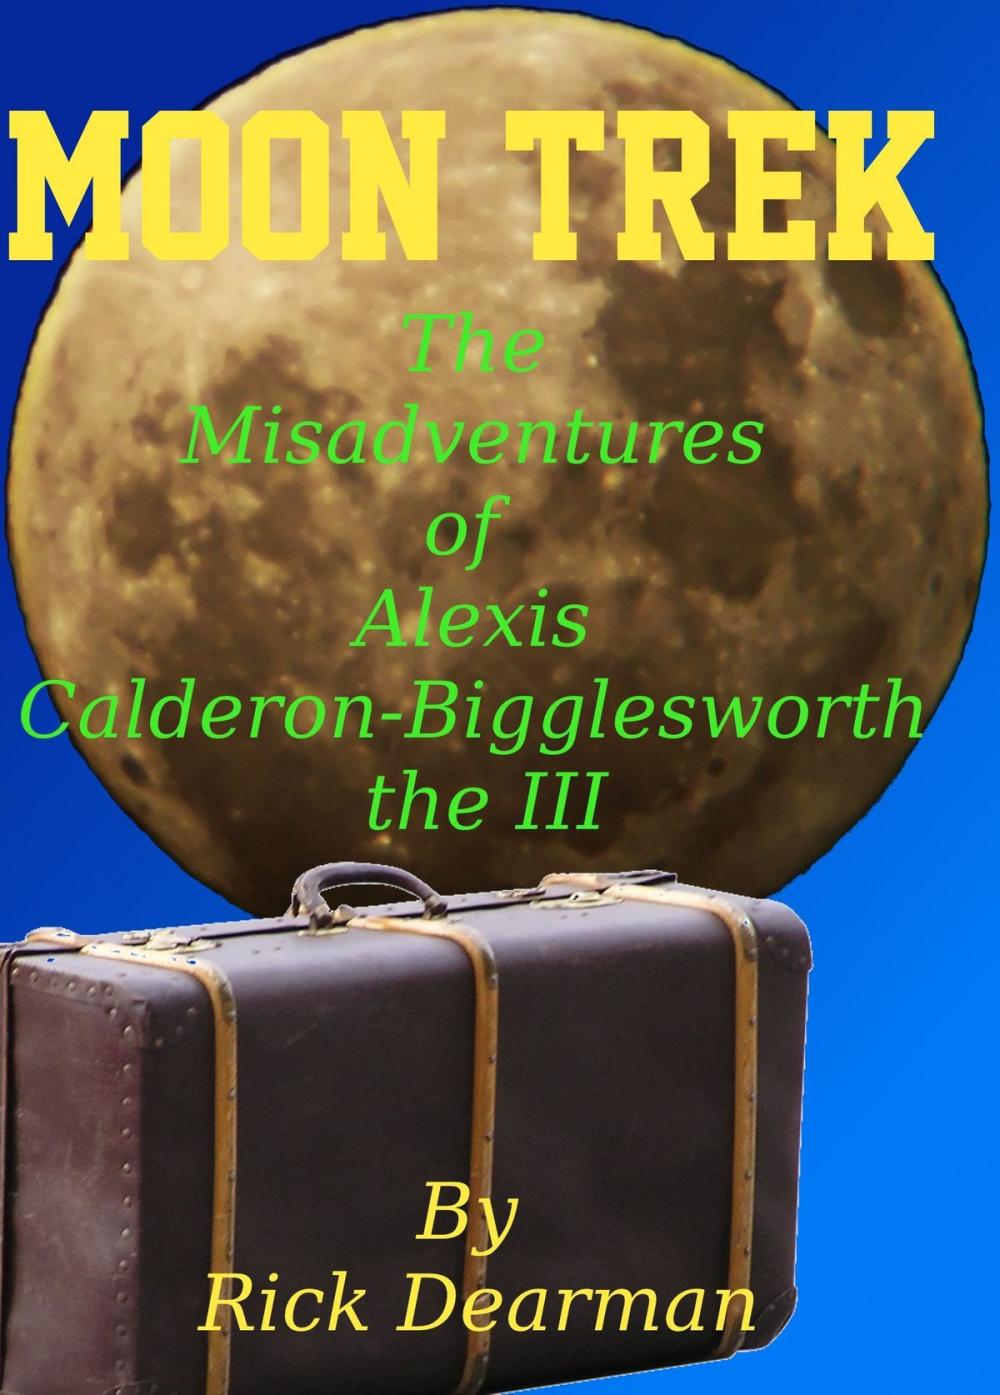 Big bigCover of Moon Trek: The Misadventures of Alexis Calderon-Bigglesworth III